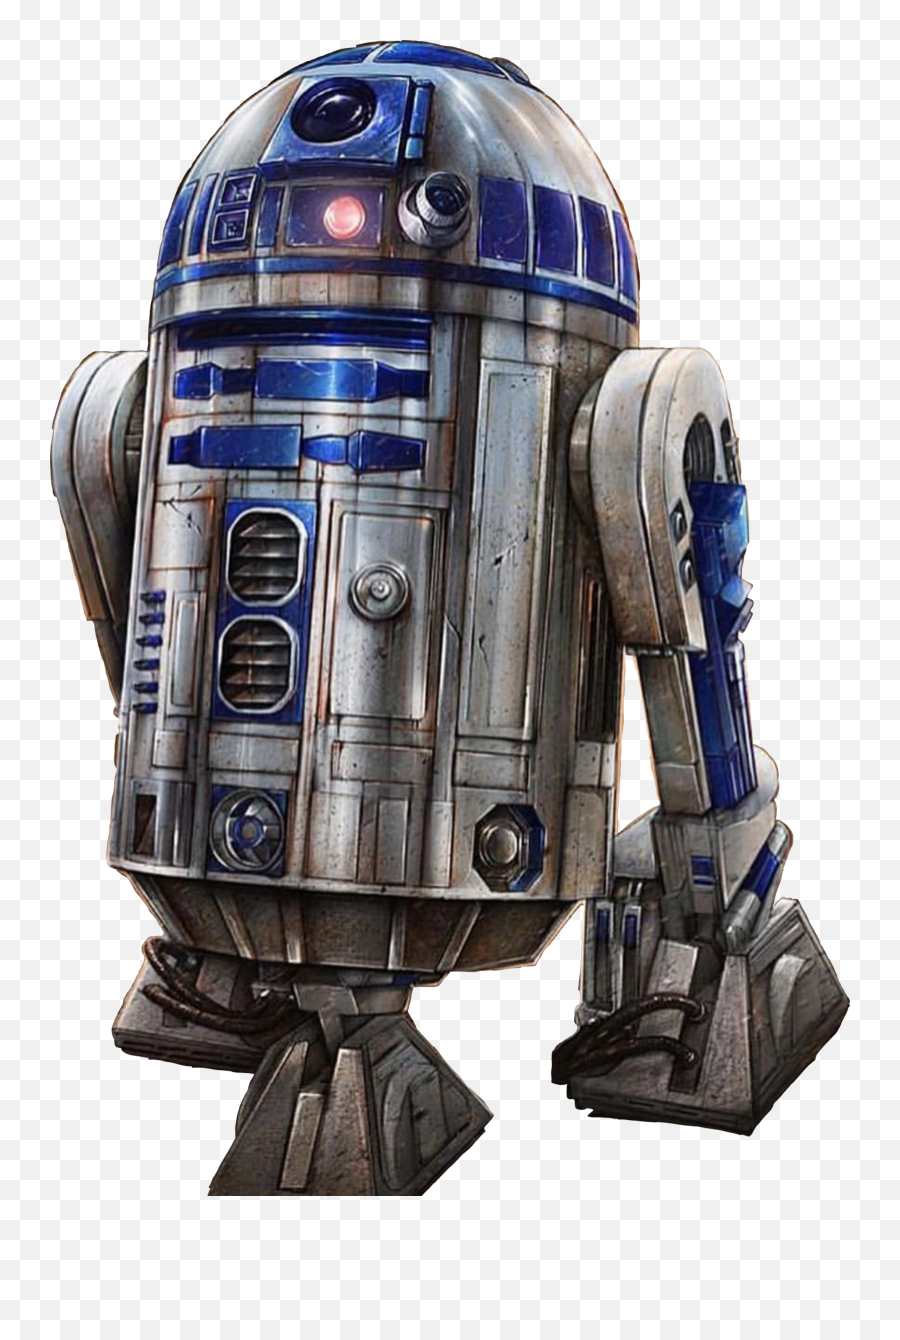 Starwars Droid R2d2 Robot Pilot Sticker - Star Wars R2d2 Hd Emoji,R2d2 Emoji